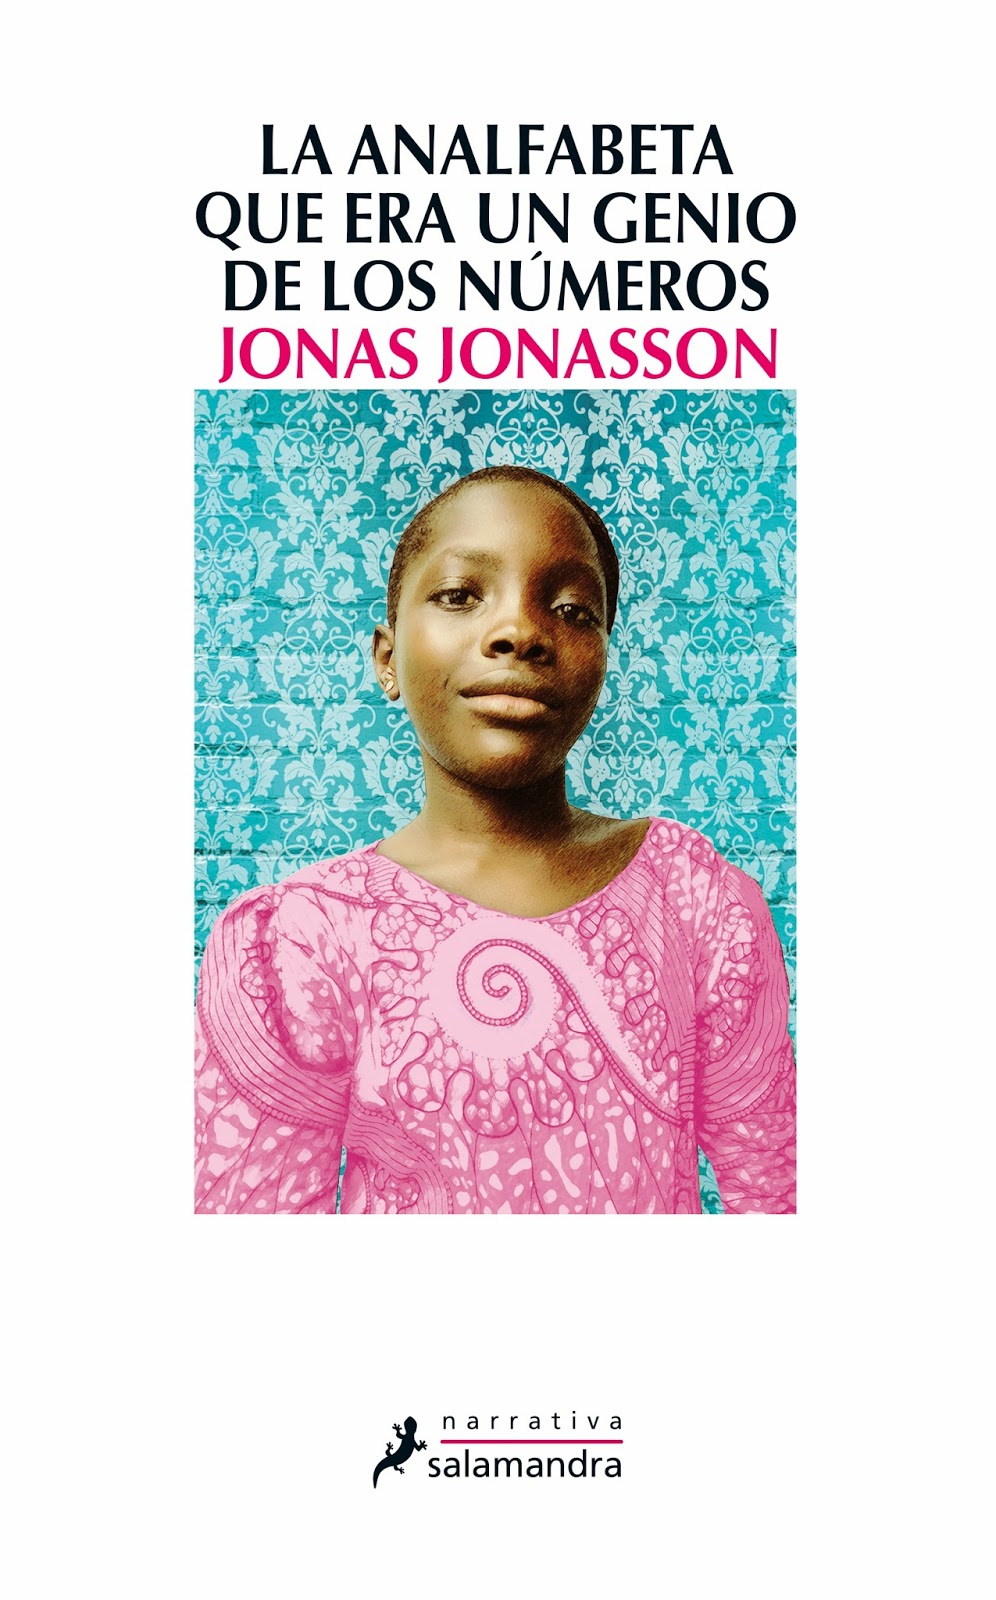 "La analfabeta que era un genio de los números" de Jonas Jonasson